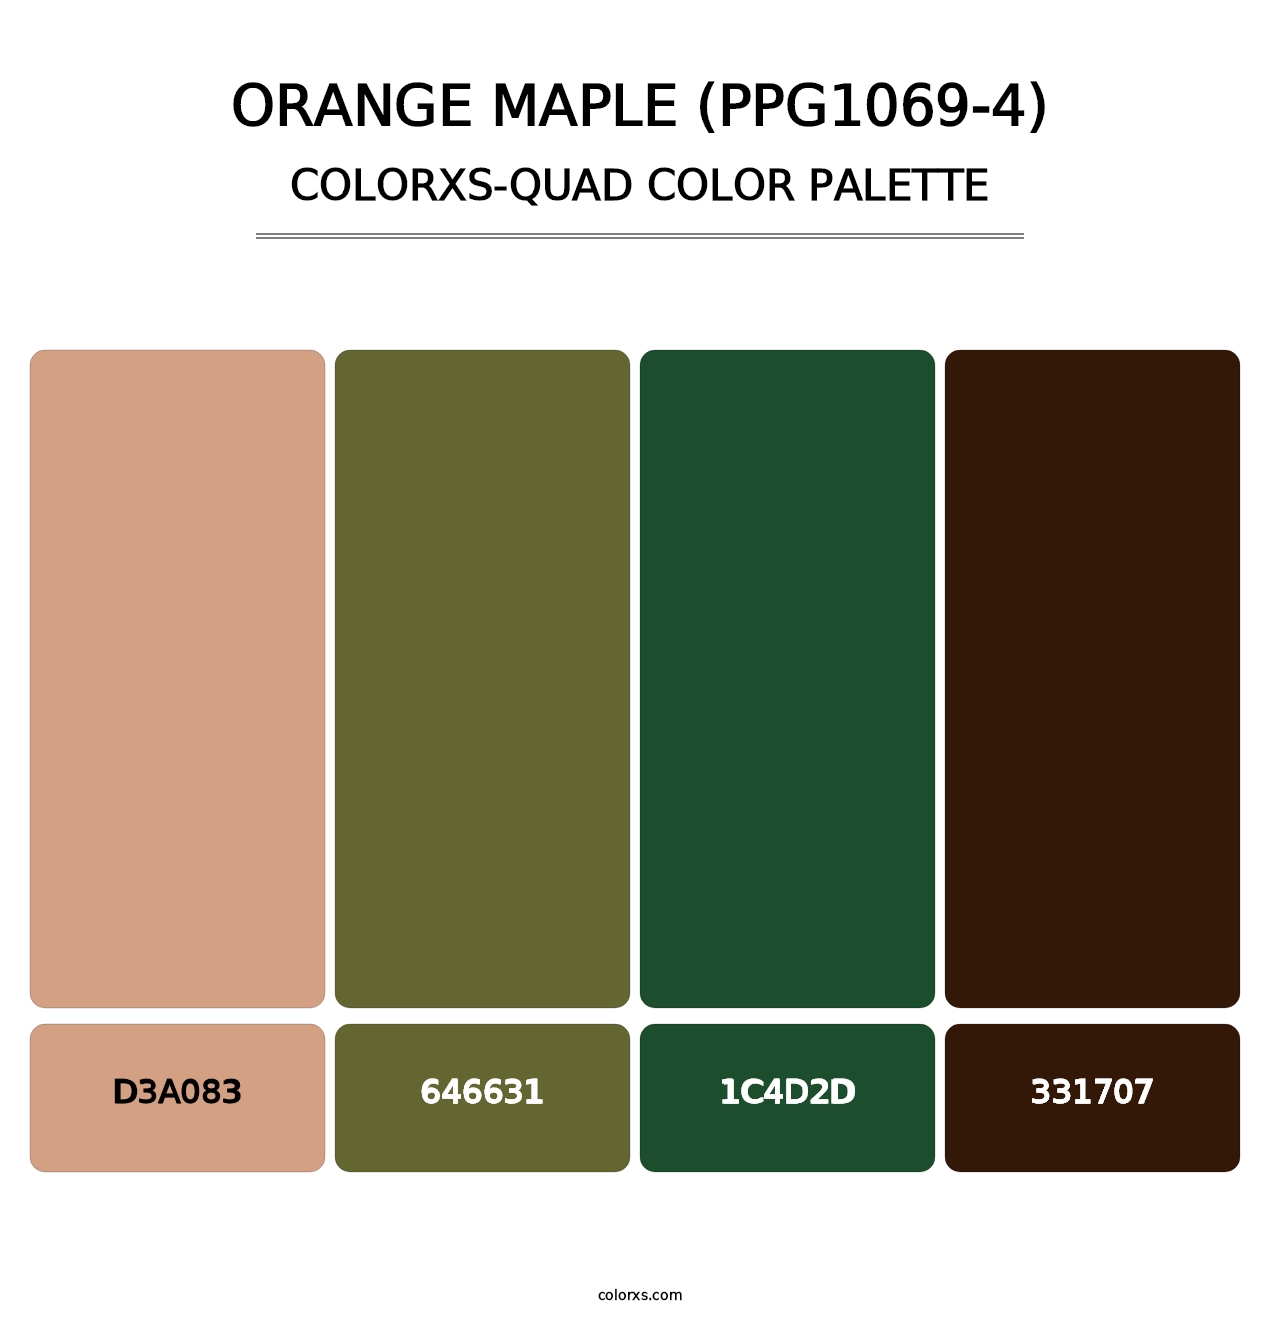 Orange Maple (PPG1069-4) - Colorxs Quad Palette